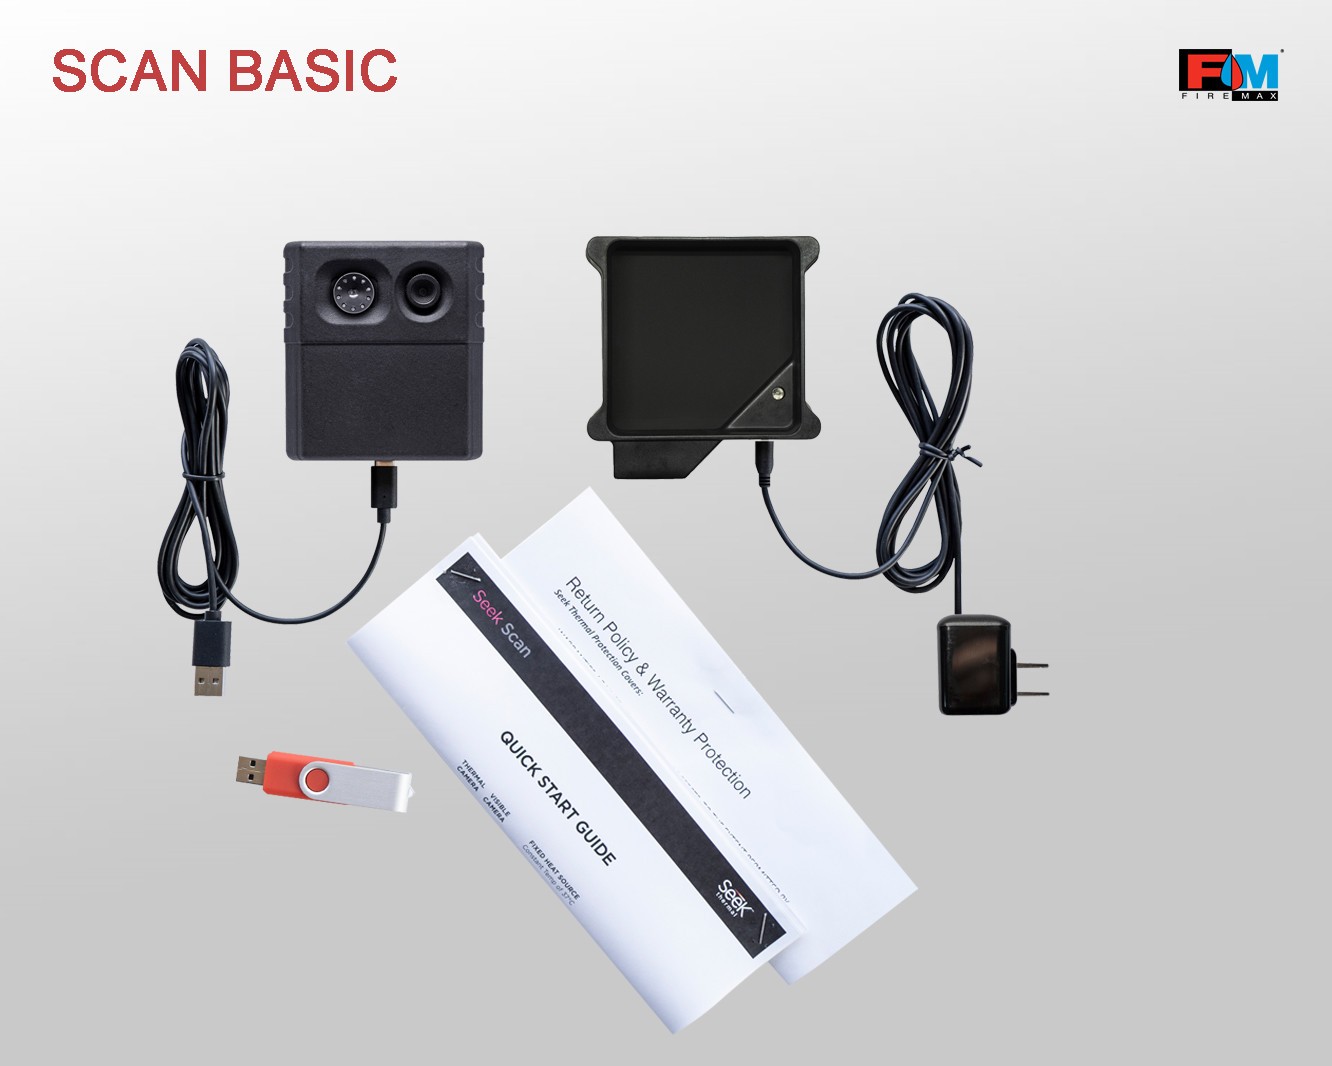 Scan Basic - wersja podstawowa, oprogramowanie, moduł kamery termowizyjnej i video oraz źródło stałej temperatury